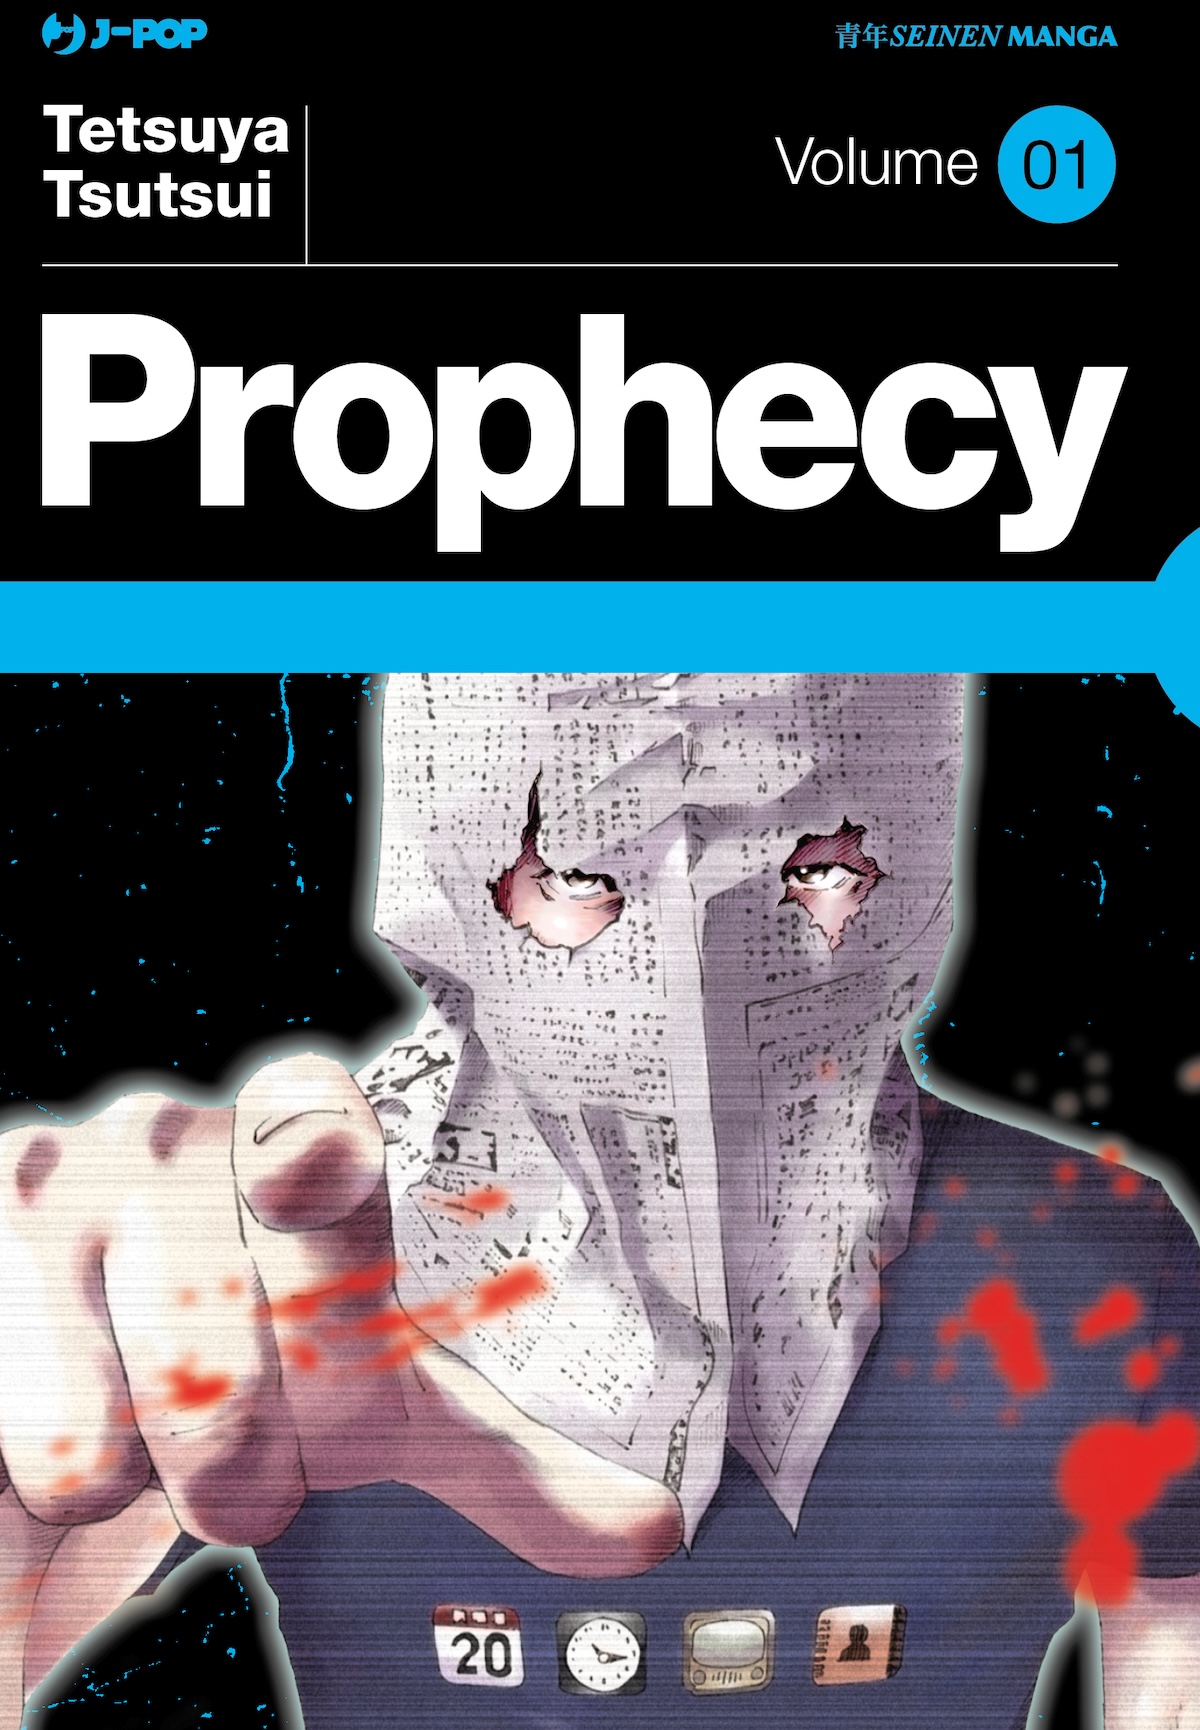 Il manga Prophecy di Tetsuya Tsutsui